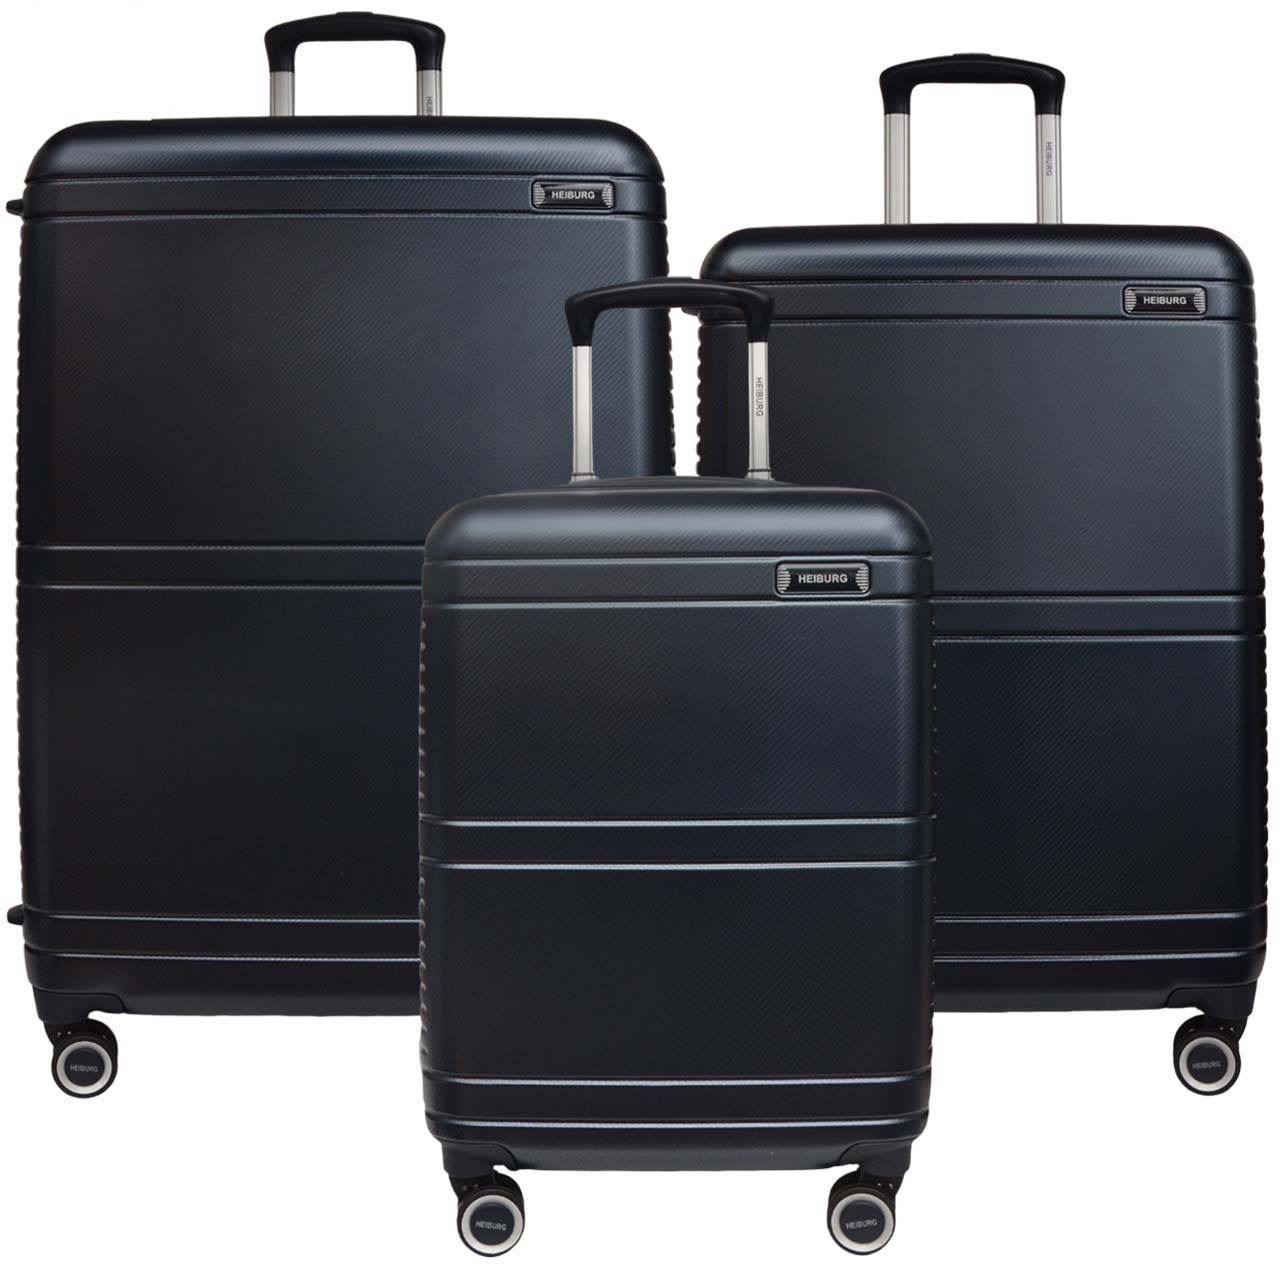 مجموعه سه عددی چمدان هایبورگ مدل 0101